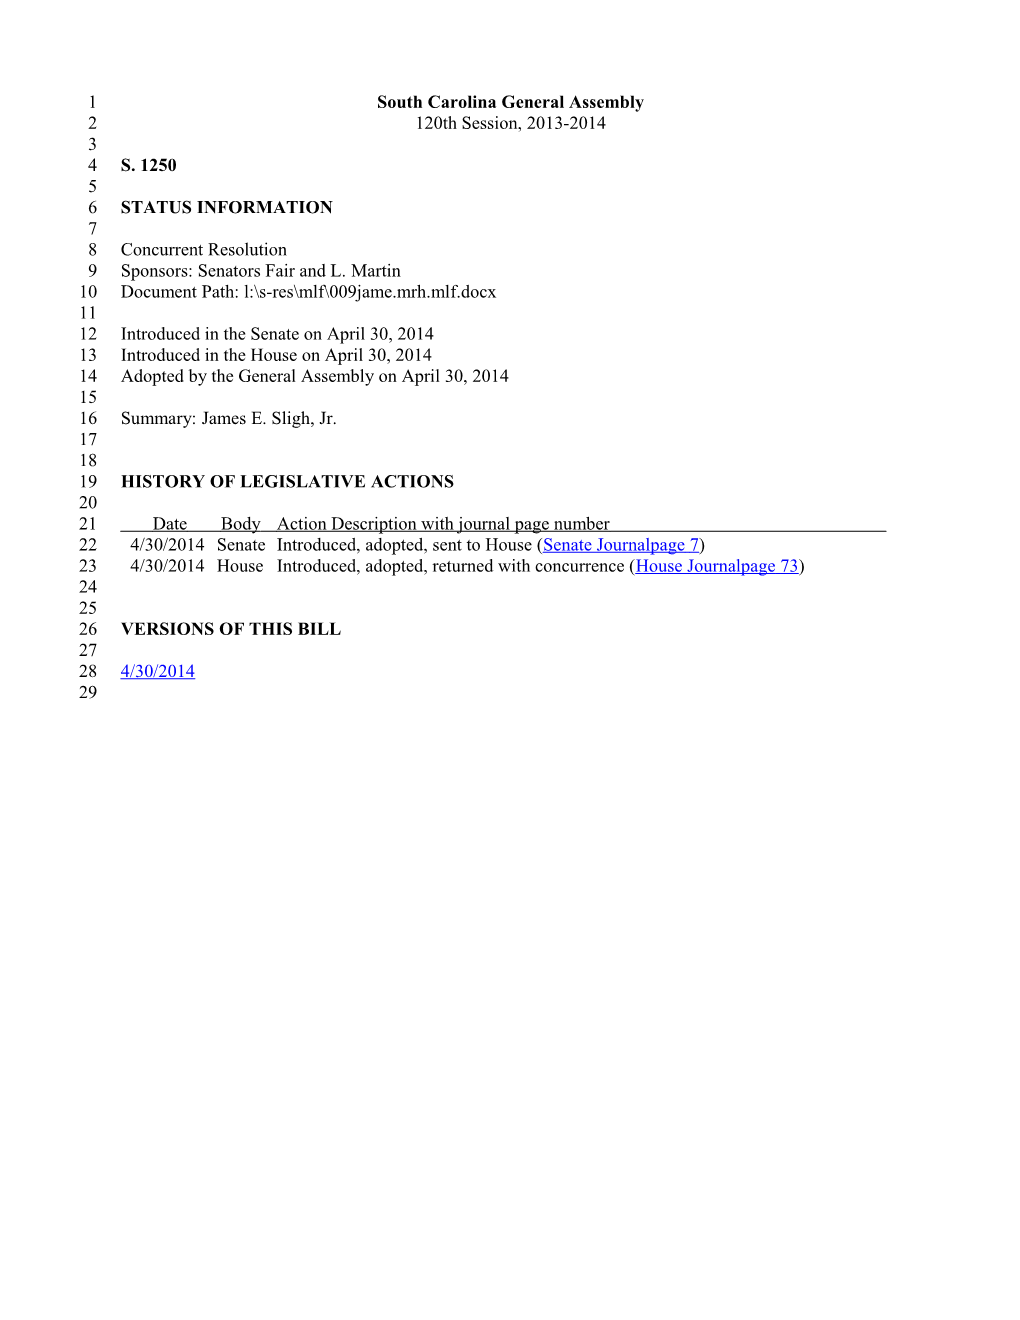 2013-2014 Bill 1250: James E. Sligh, Jr. - South Carolina Legislature Online